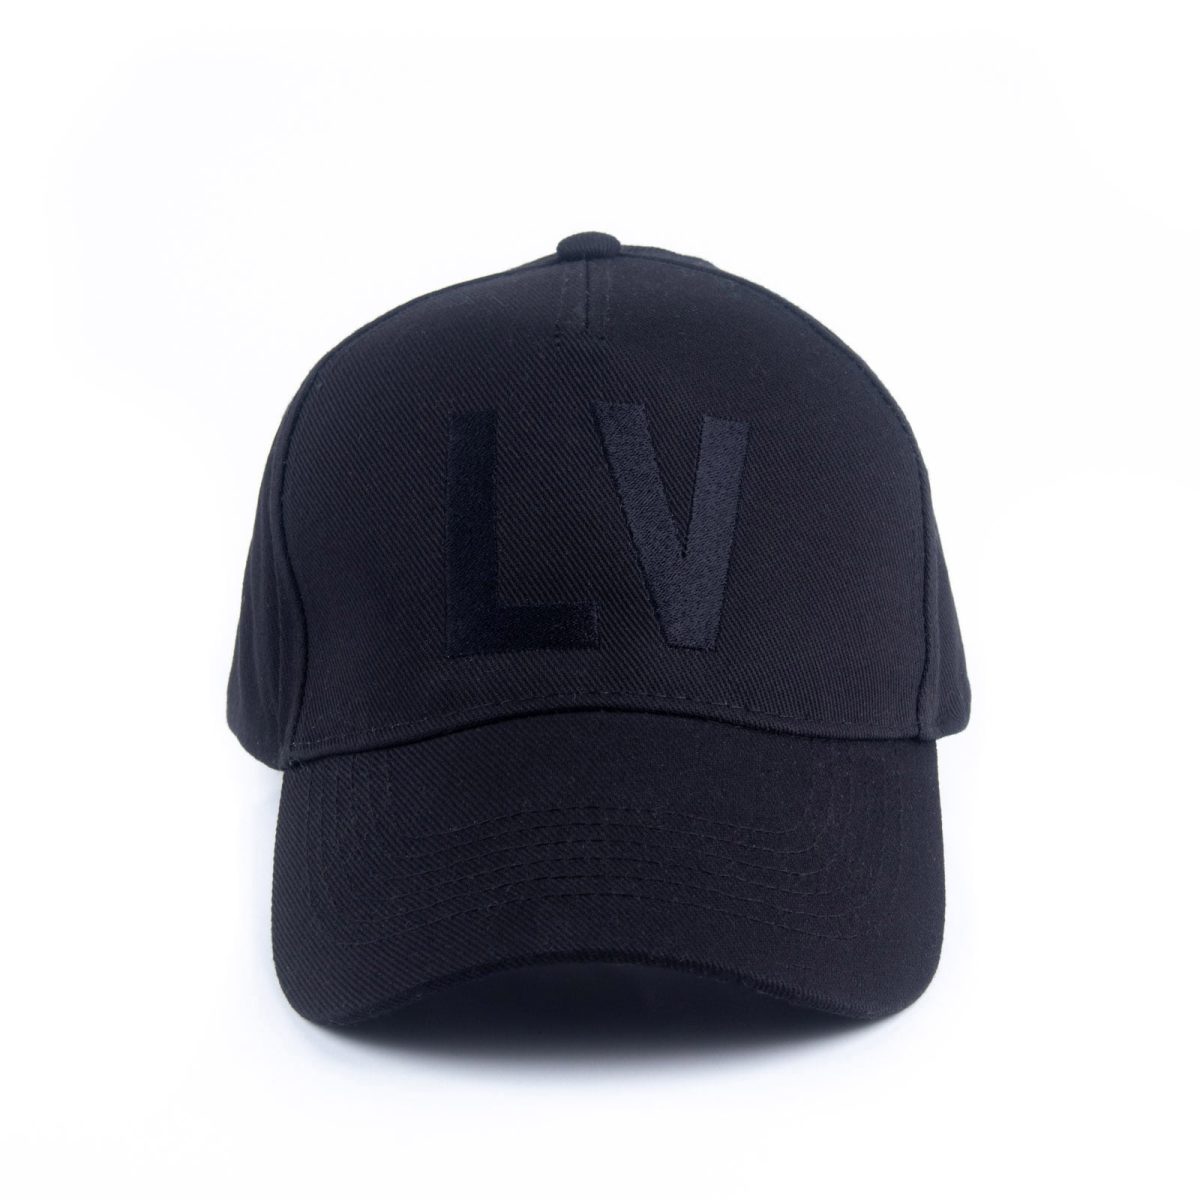 Louis Vuitton LV Day Cap Black Cotton. Size M